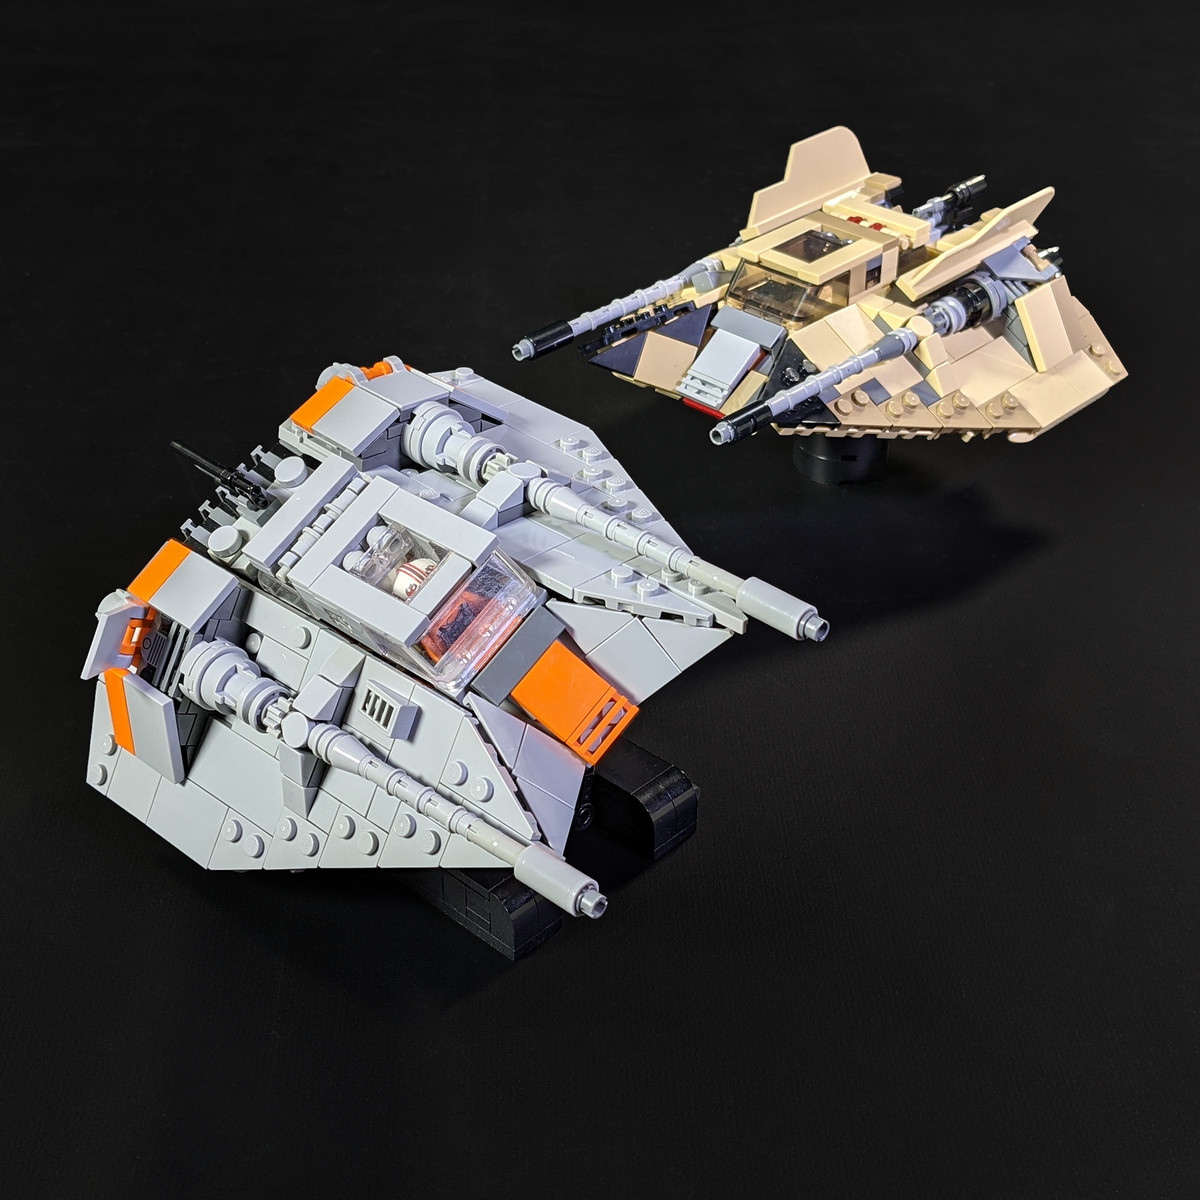 LEGO Star Wars - Edition mise à jour et augmentée - avec une